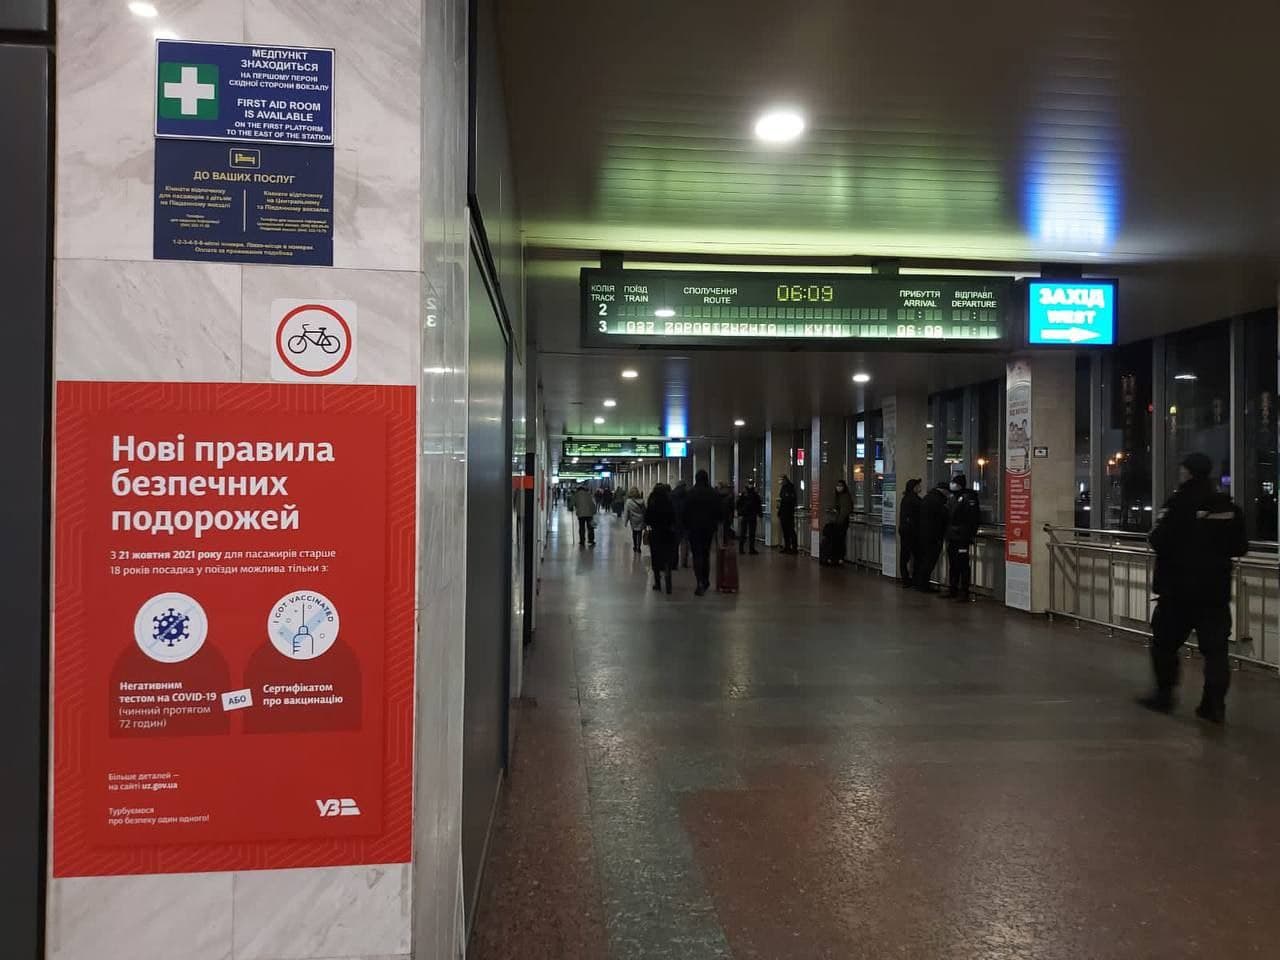 Карантин у транспорті посилили - яка ситуація на вокзалах, фото - Укрзалізниця